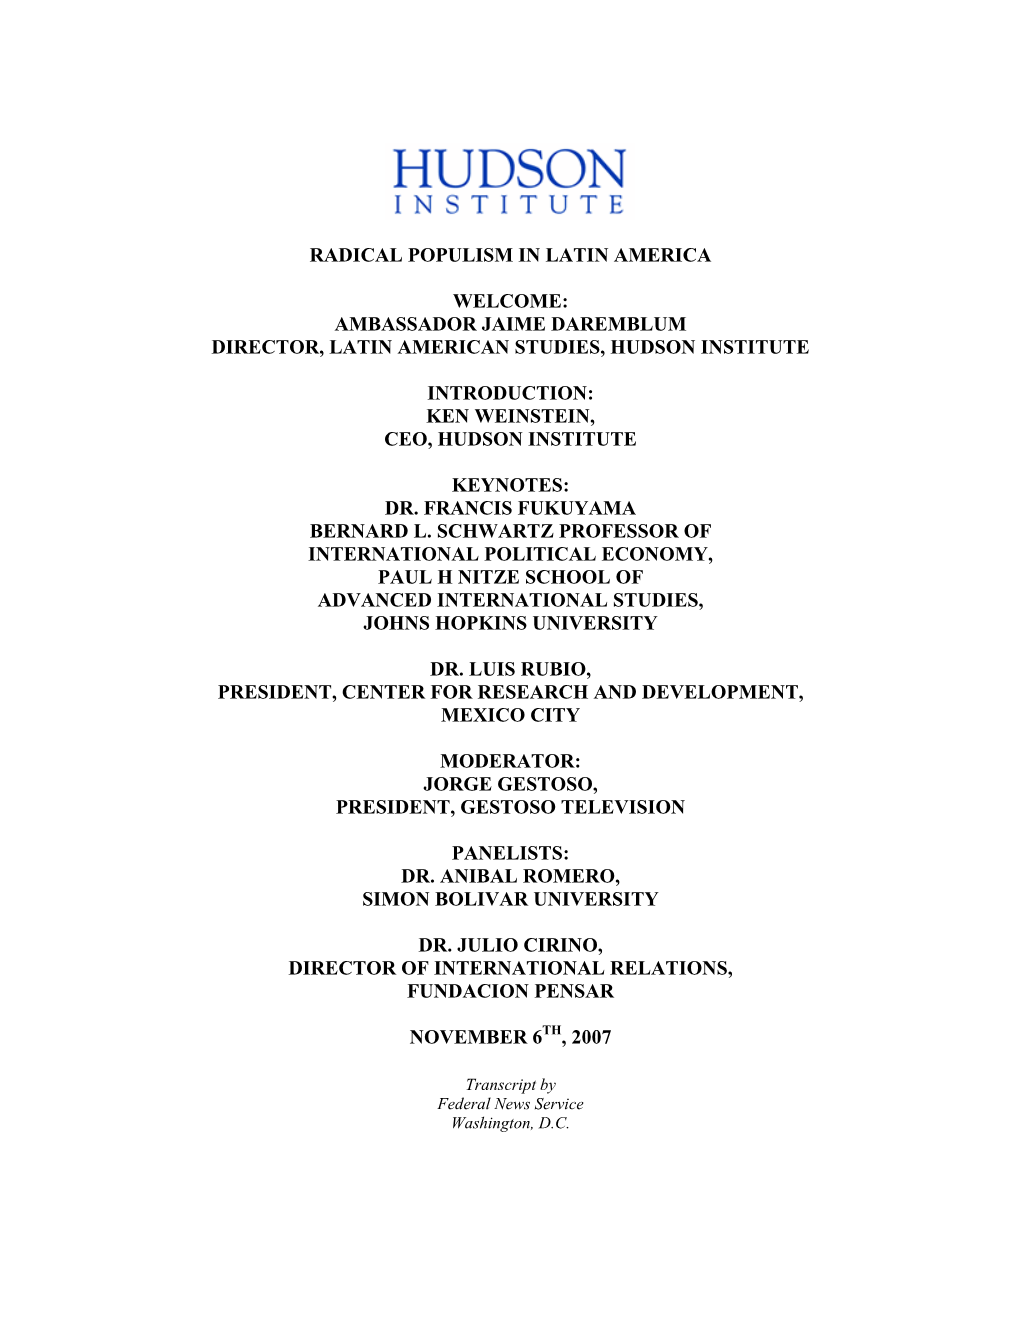 Hudson Institute